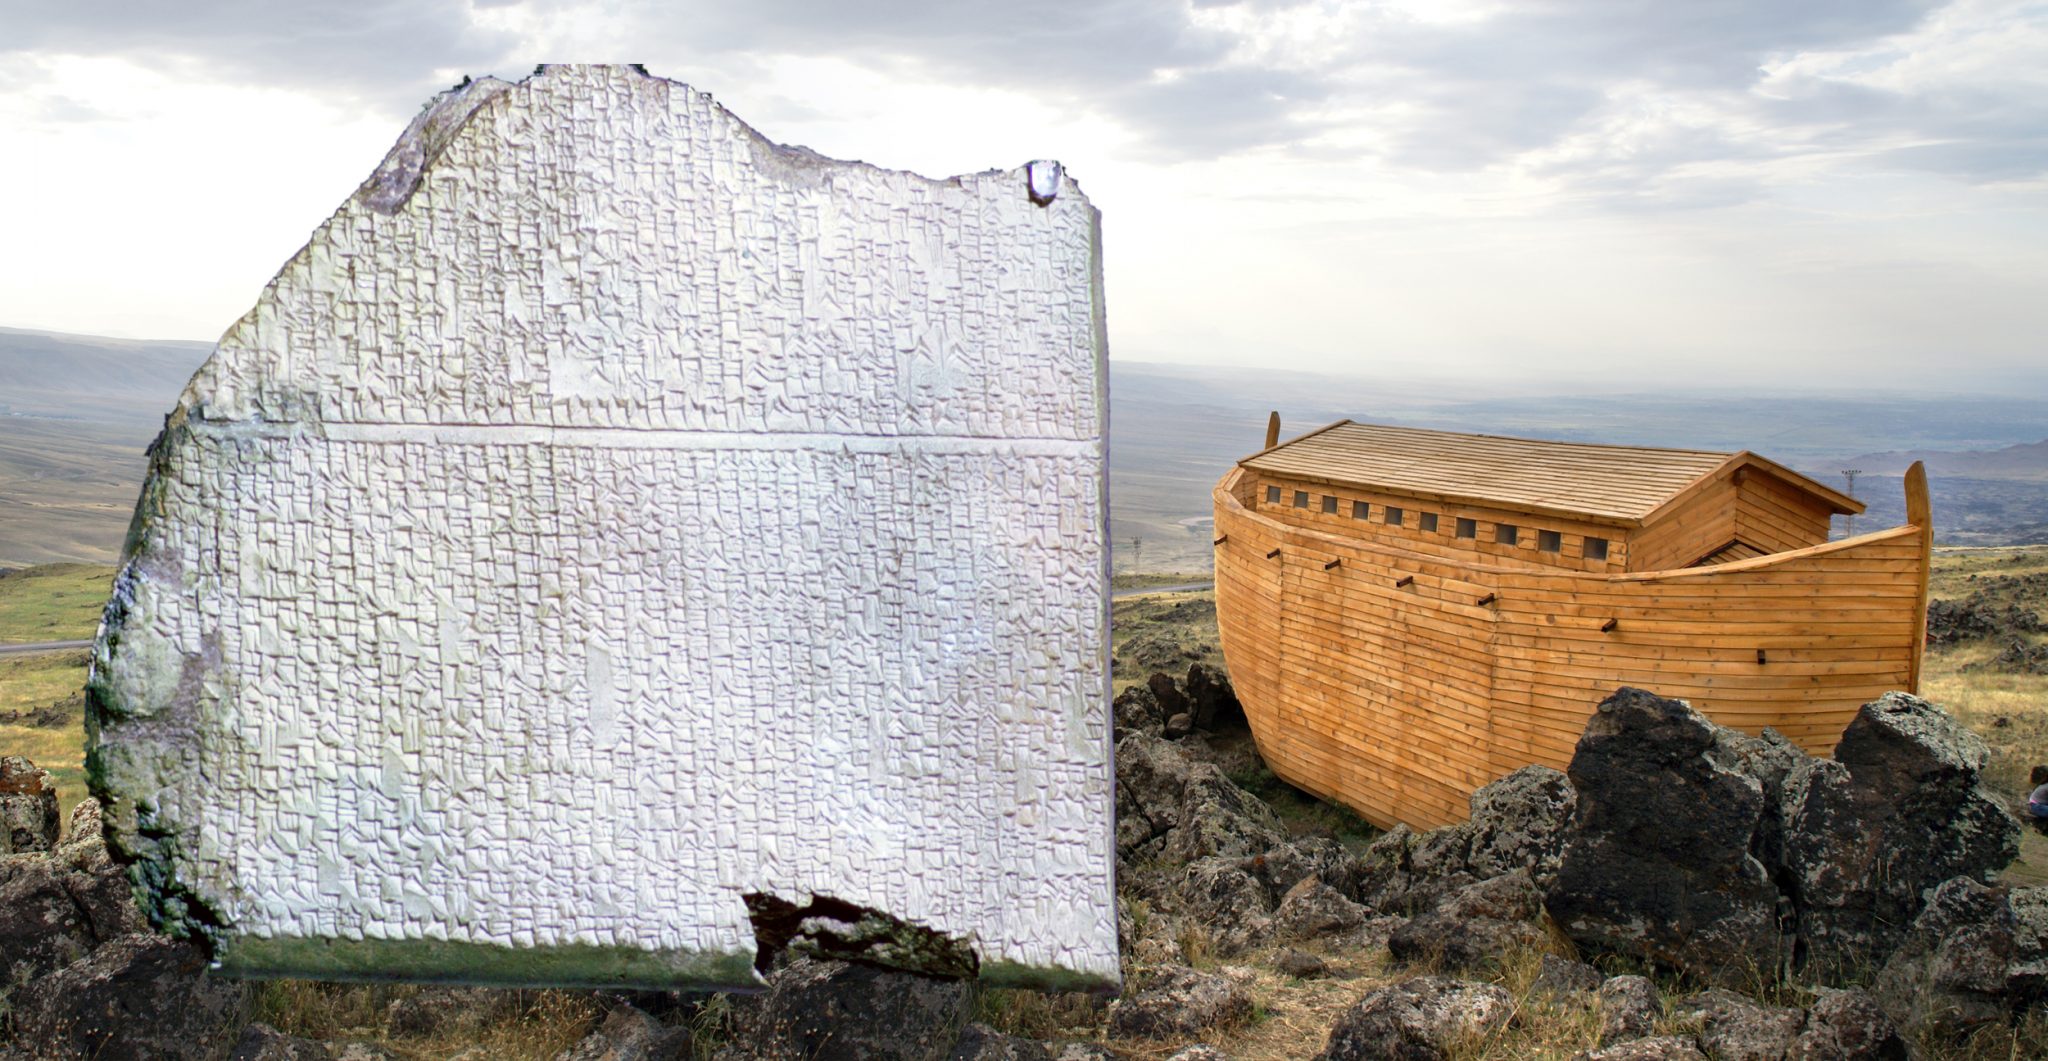 The Noah's Ark tablet